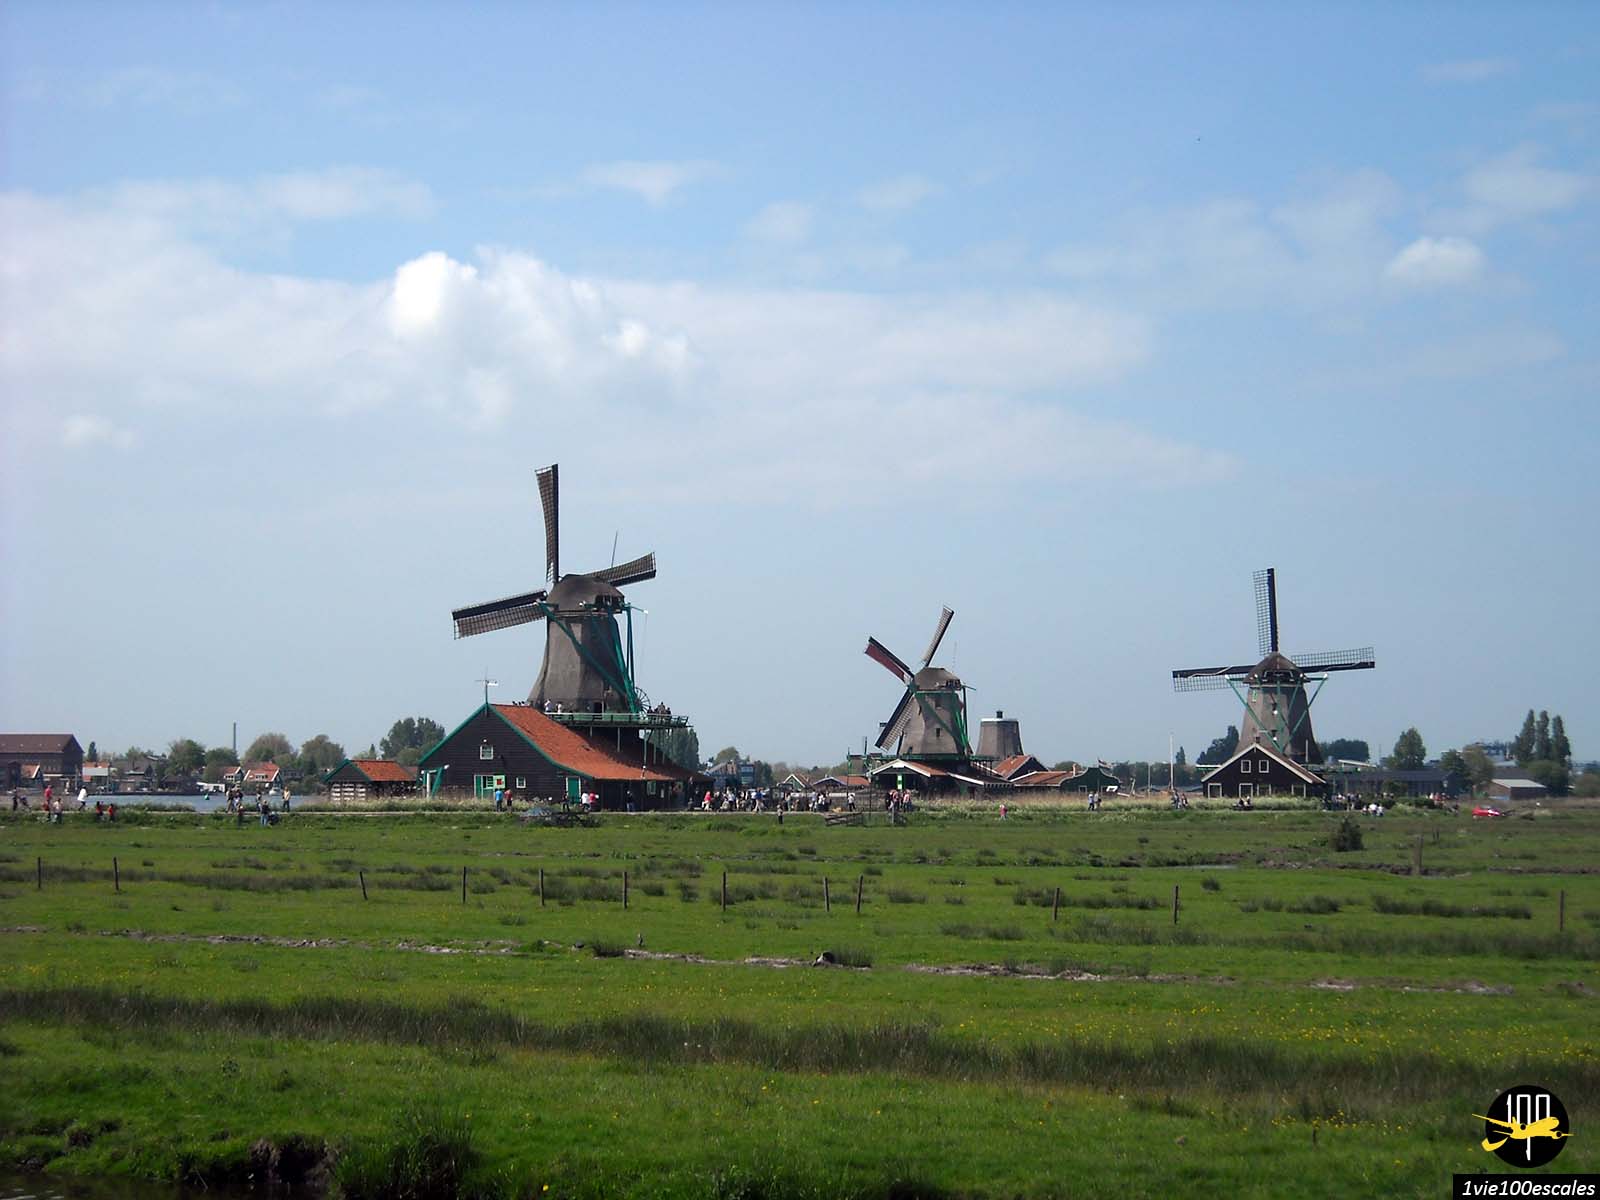 Découvrez les moulins à vent historiques de Zaanse Schans lors d'une visite en bus